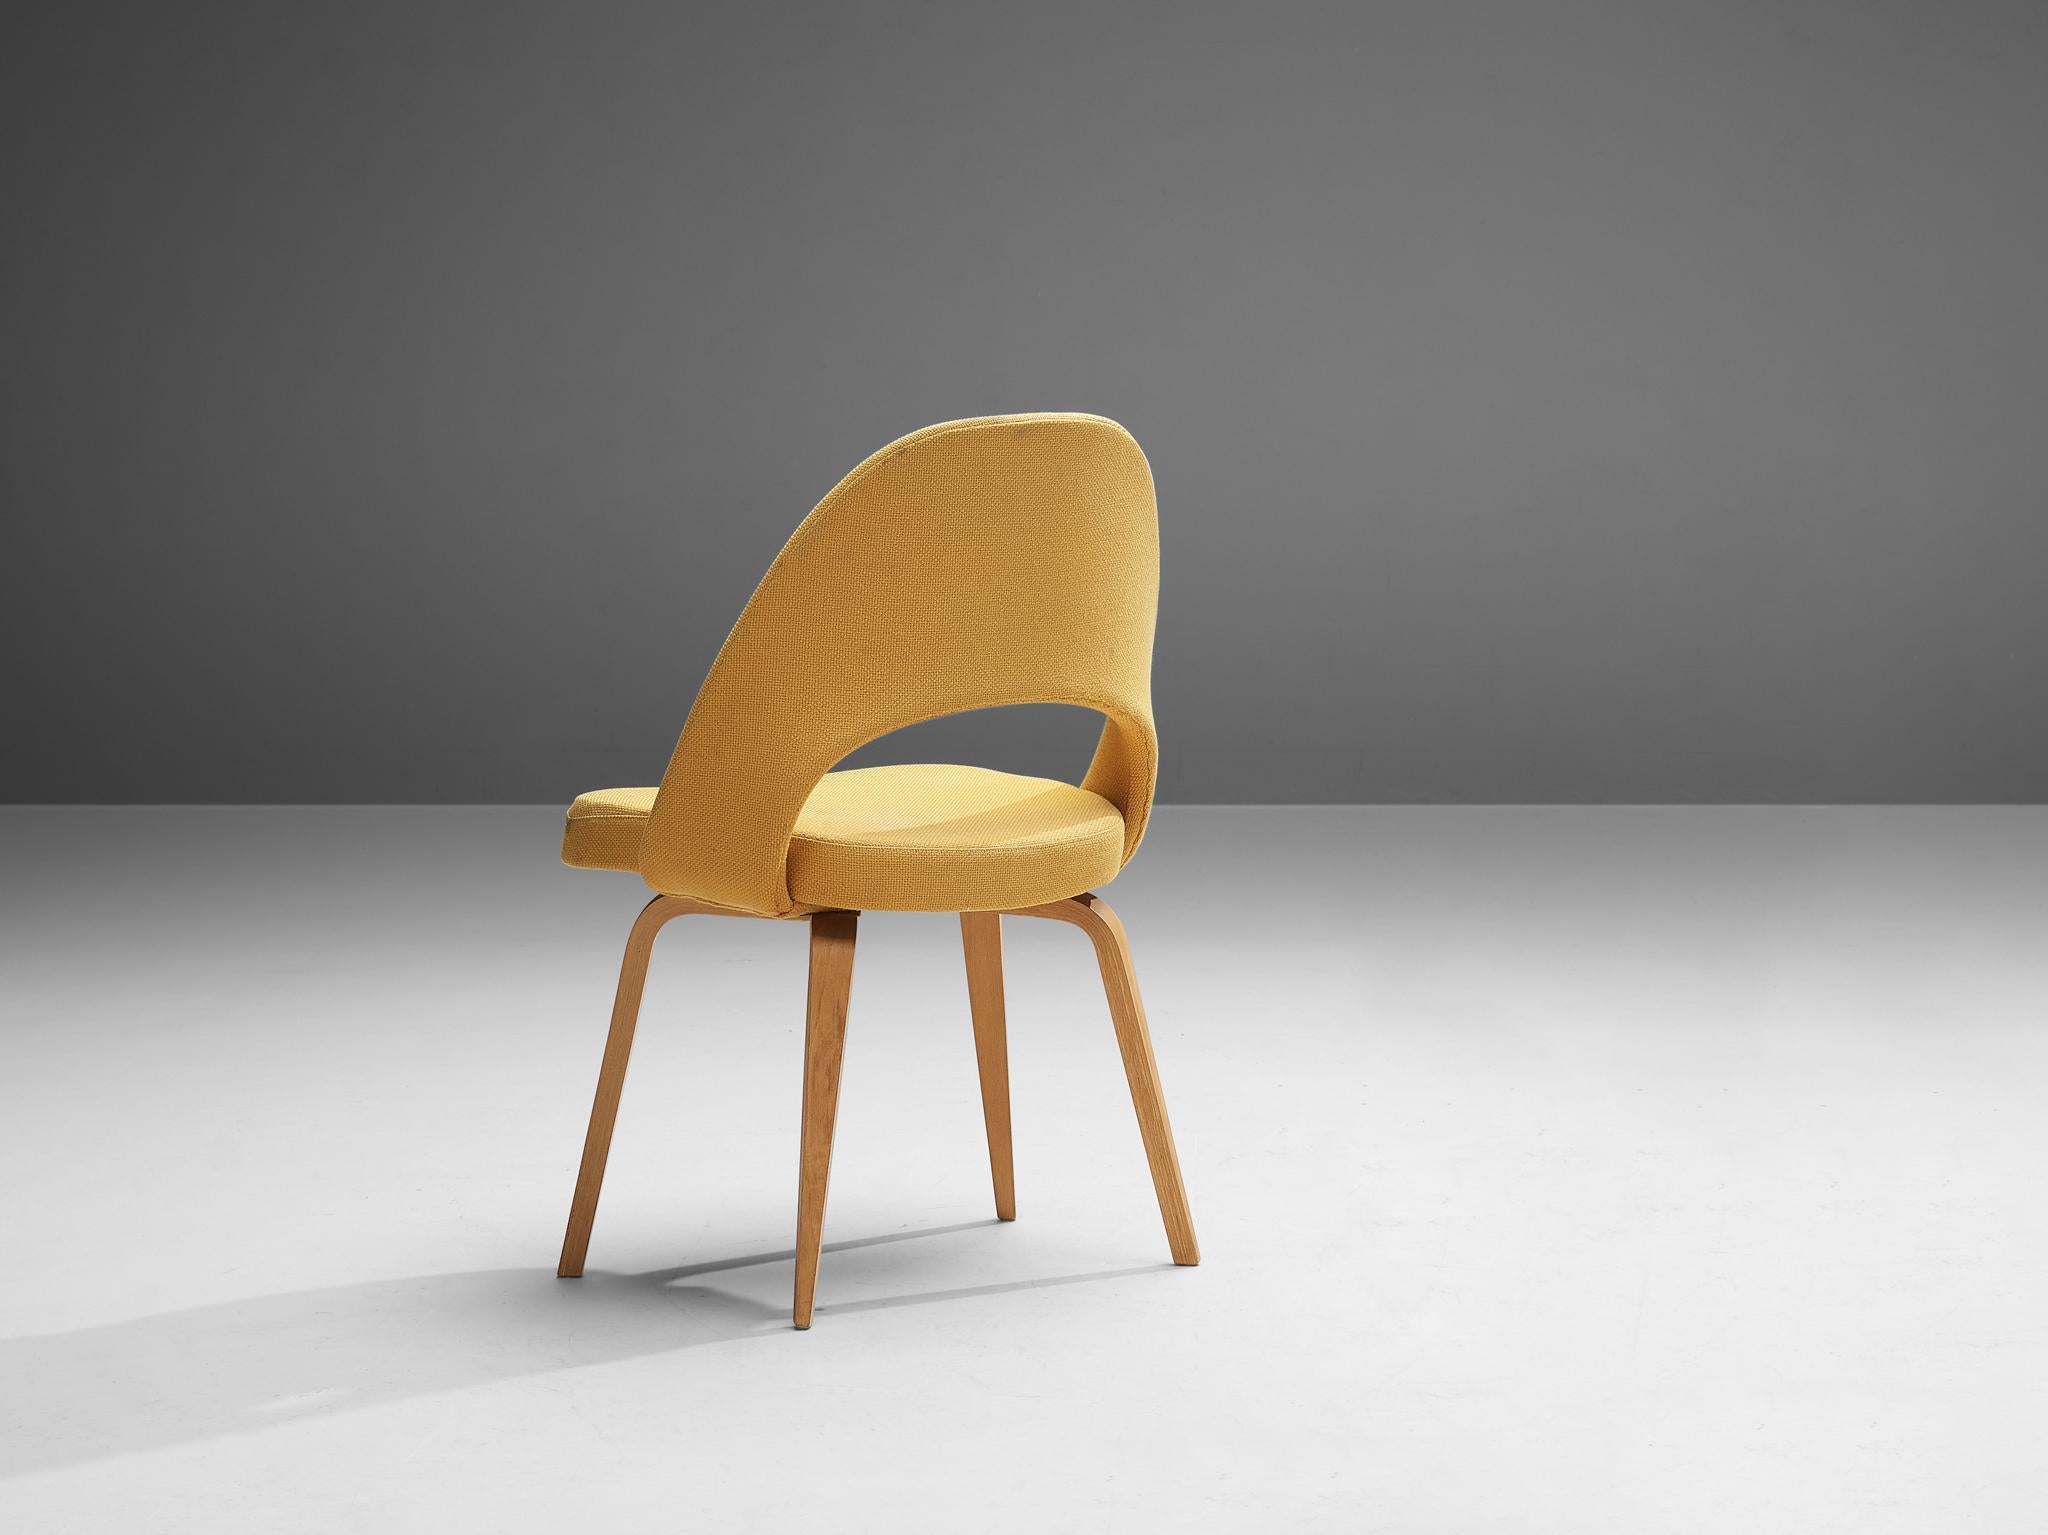 Eero Saarinen pour Knoll International, chaise de salle à manger modèle 72, contreplaqué, tissu, États-Unis, design 1948, production ultérieure

Une chaise de forme organique conçue par Eero Saarinen. Une forme fluide et sculpturale. Ce design